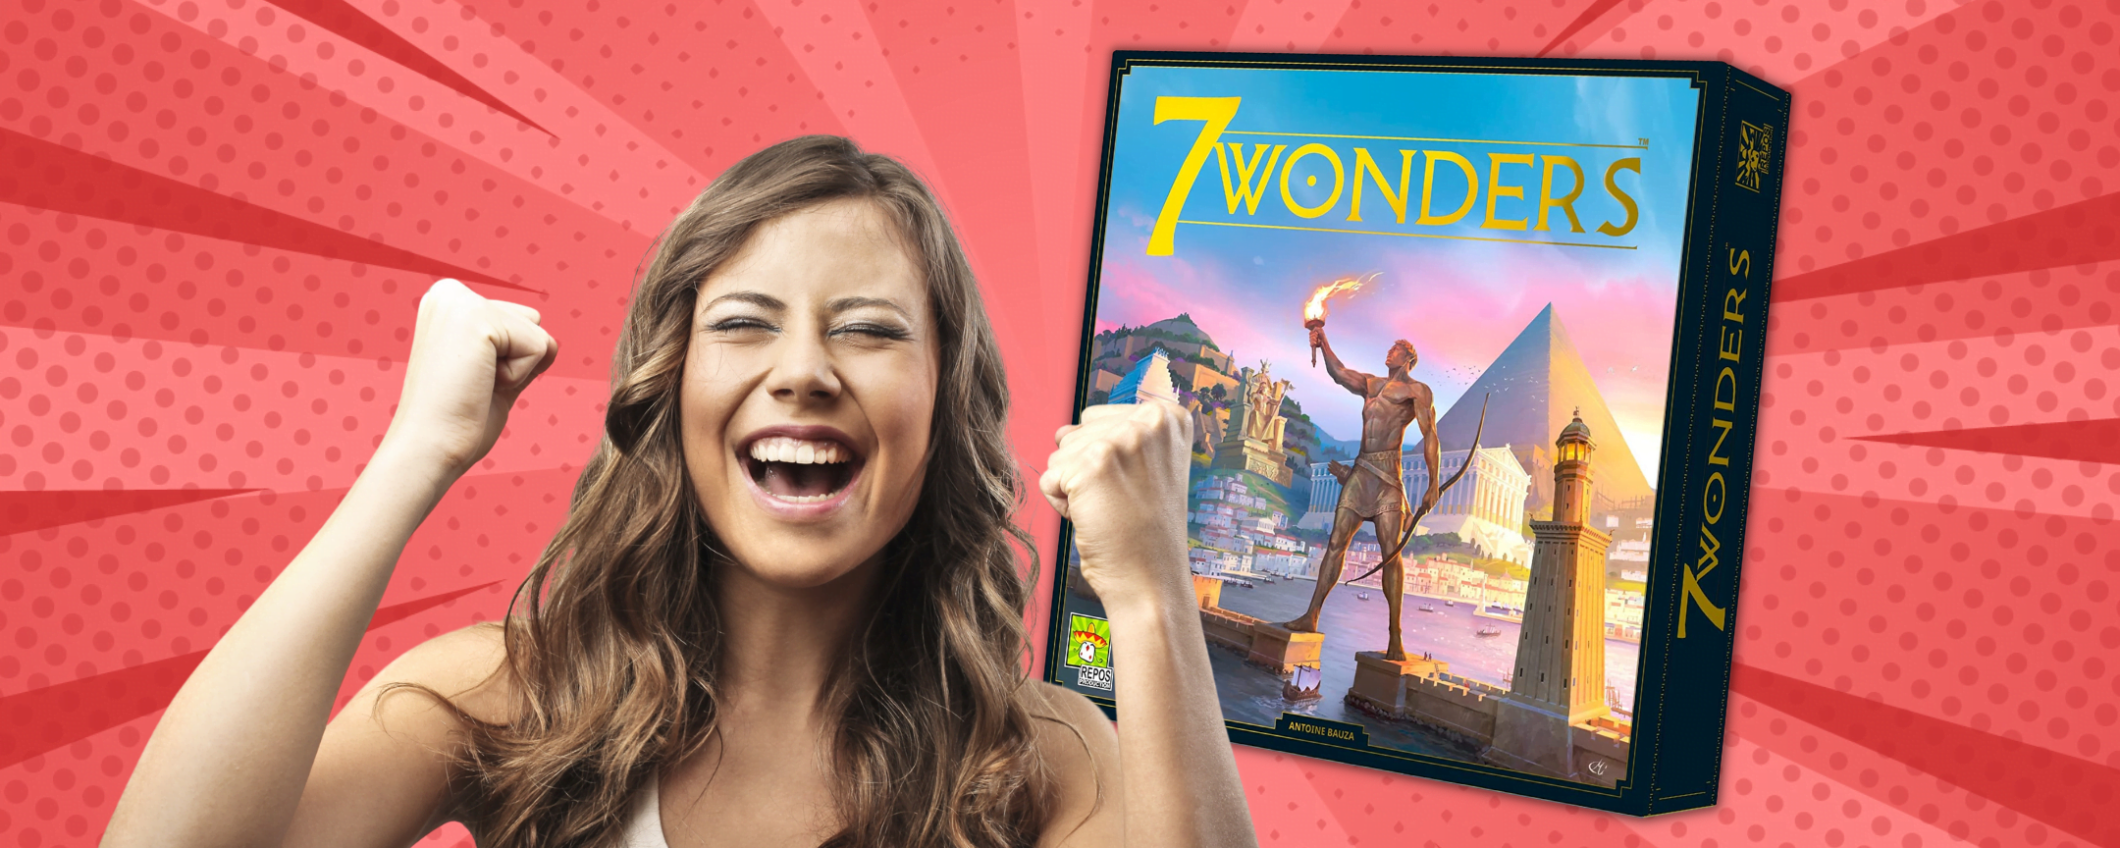 7 Wonders è l'ottava Meraviglia del mondo: il gioco oggi è in sconto